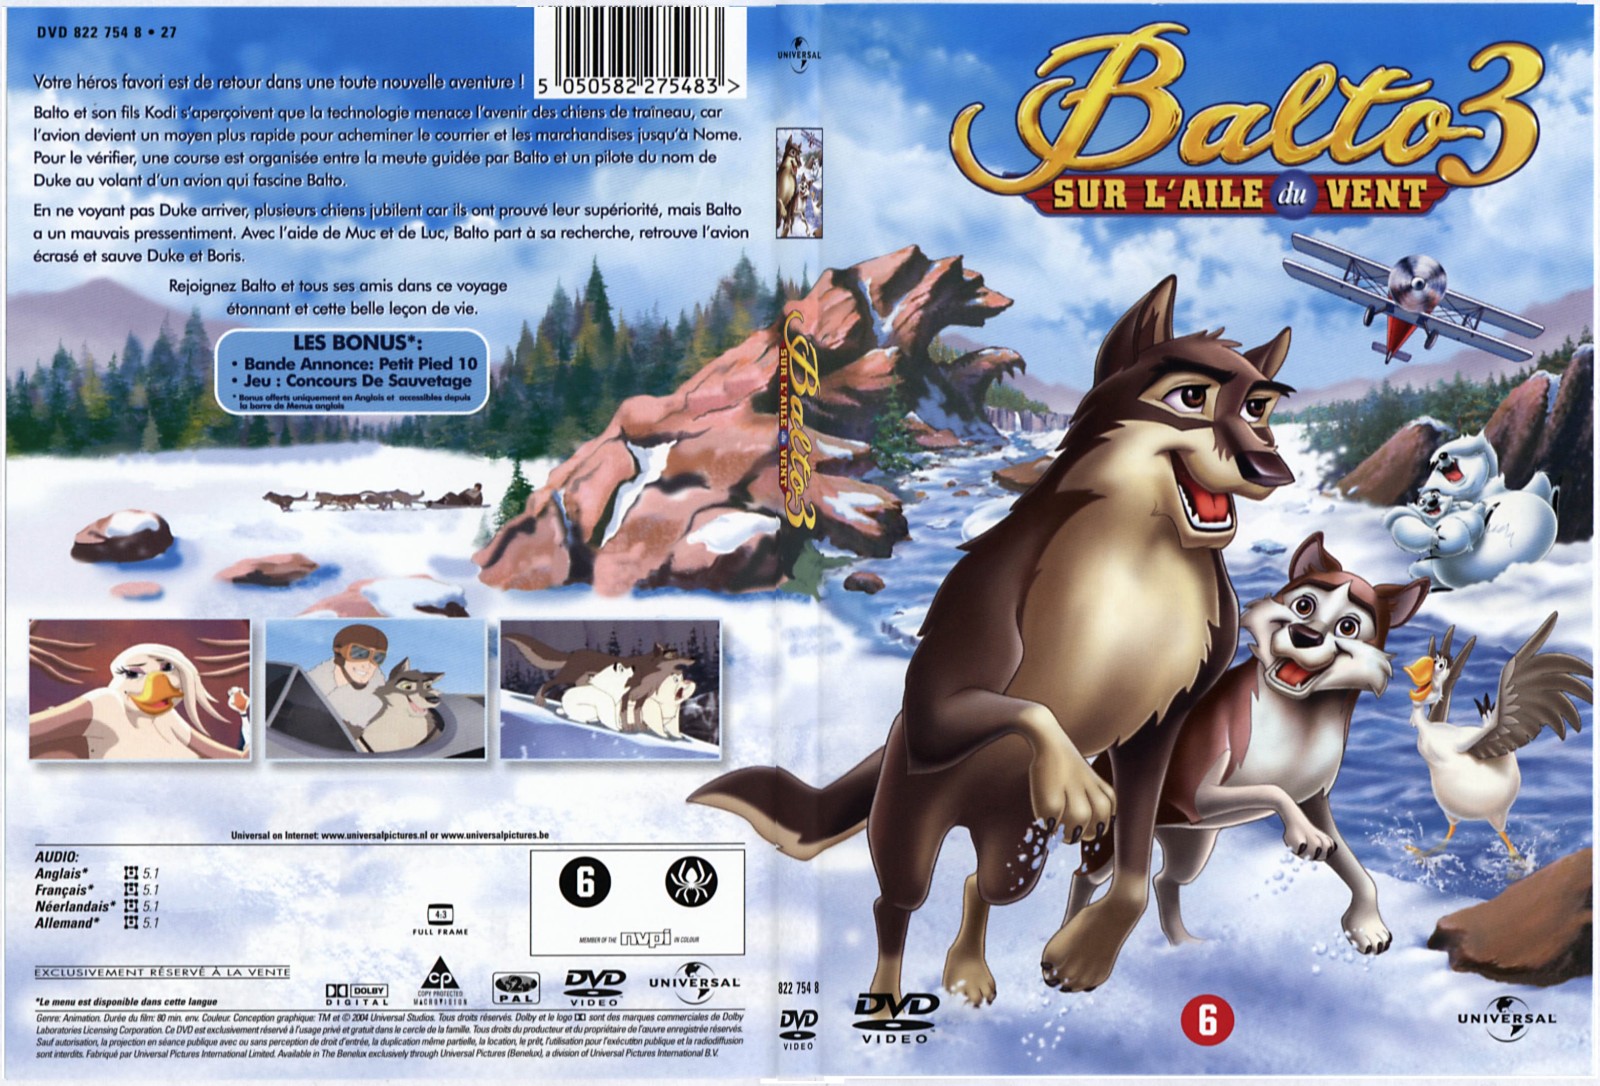 Jaquette DVD Balto 3 - SLIM